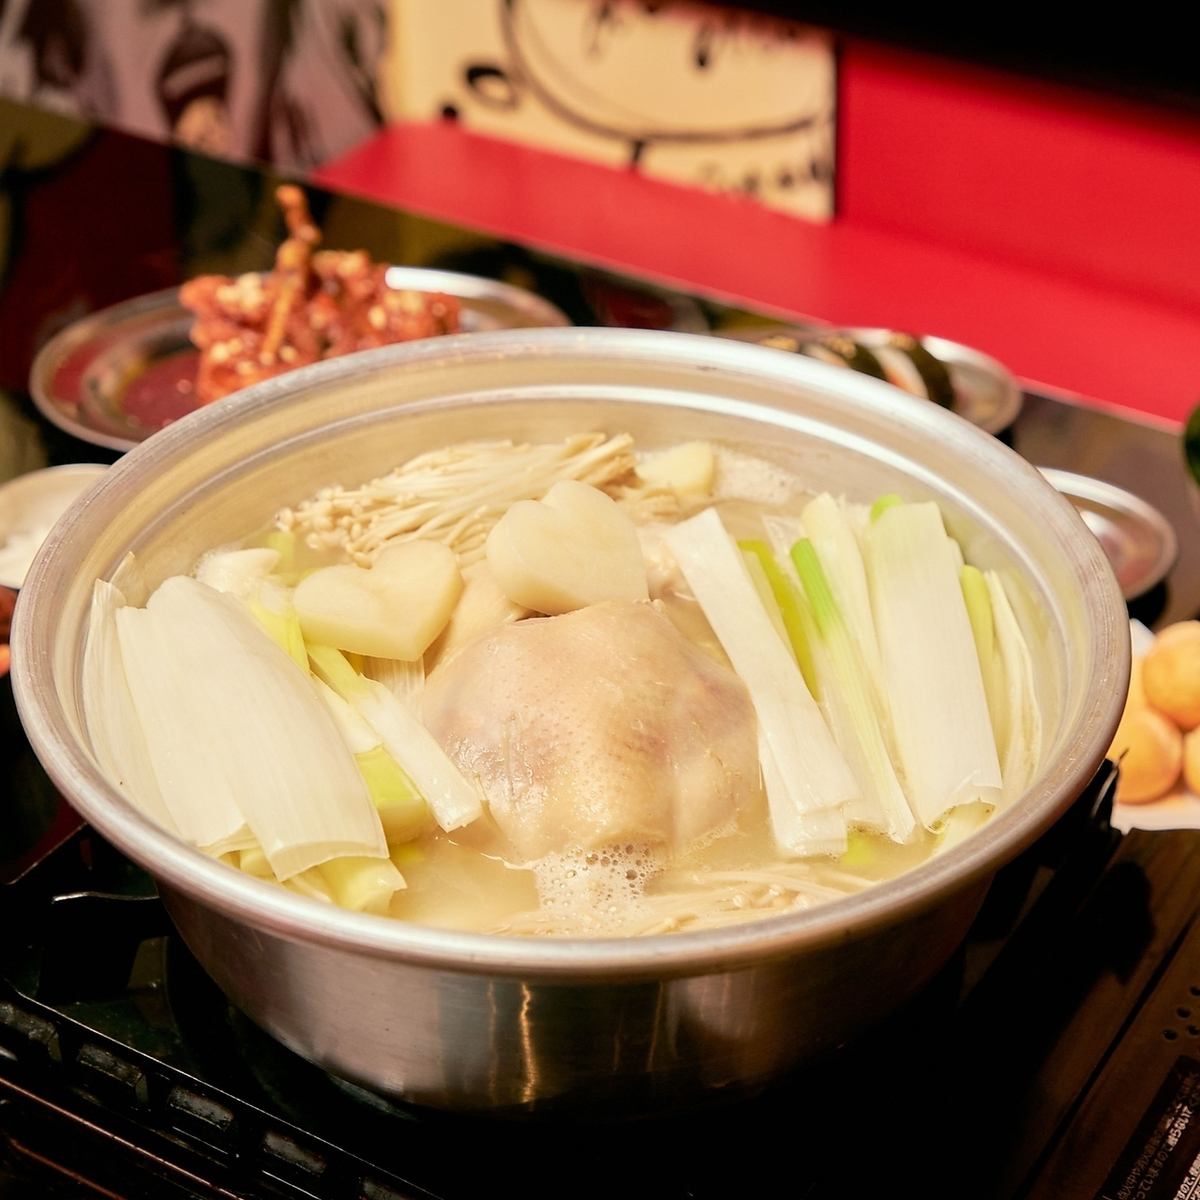 ◆鶏をまるまる一羽使用したほっと温まる韓国鍋「タッカンマリ」が楽しめます♪◆